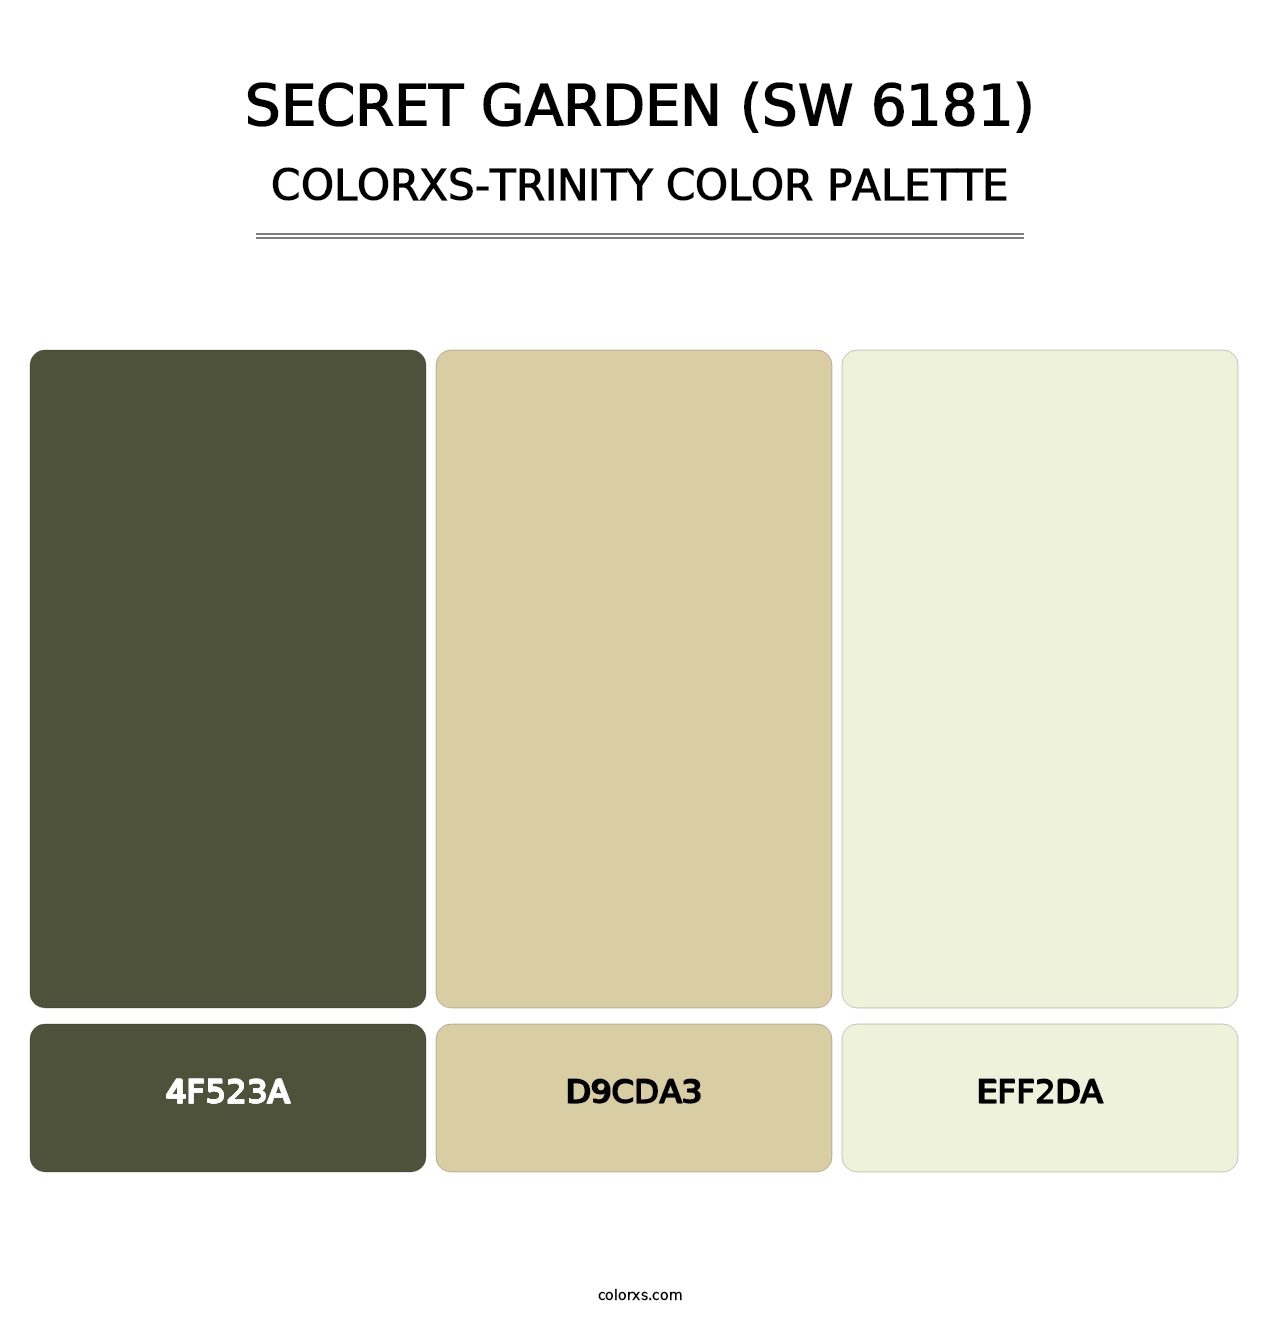 Secret Garden (SW 6181) - Colorxs Trinity Palette